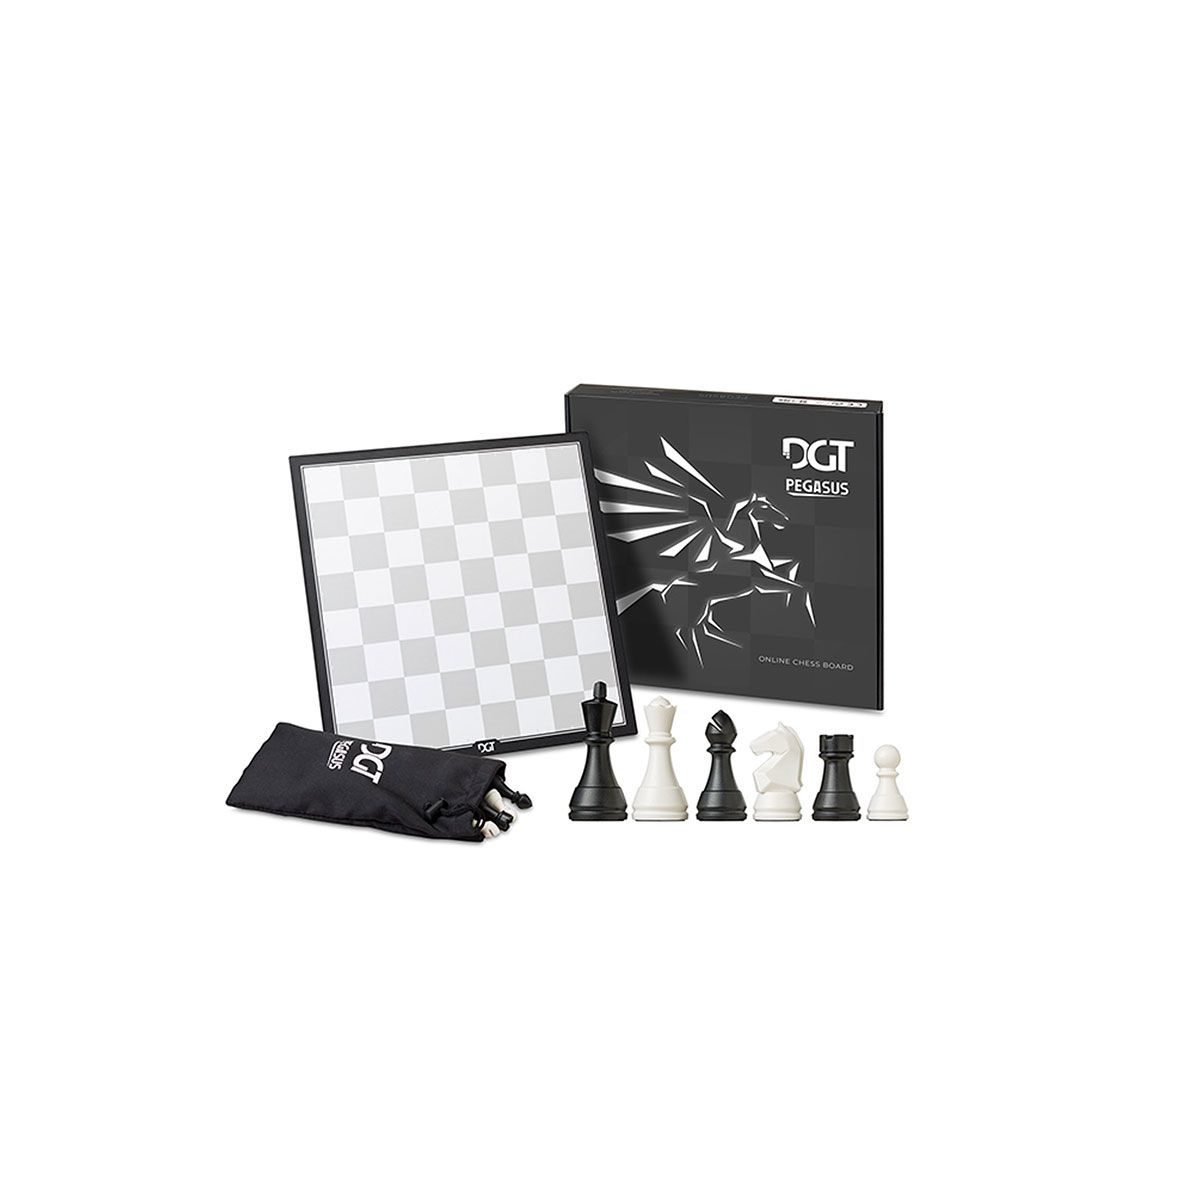 DGT Pegasus - tabuleiro eletronico para xadrez online